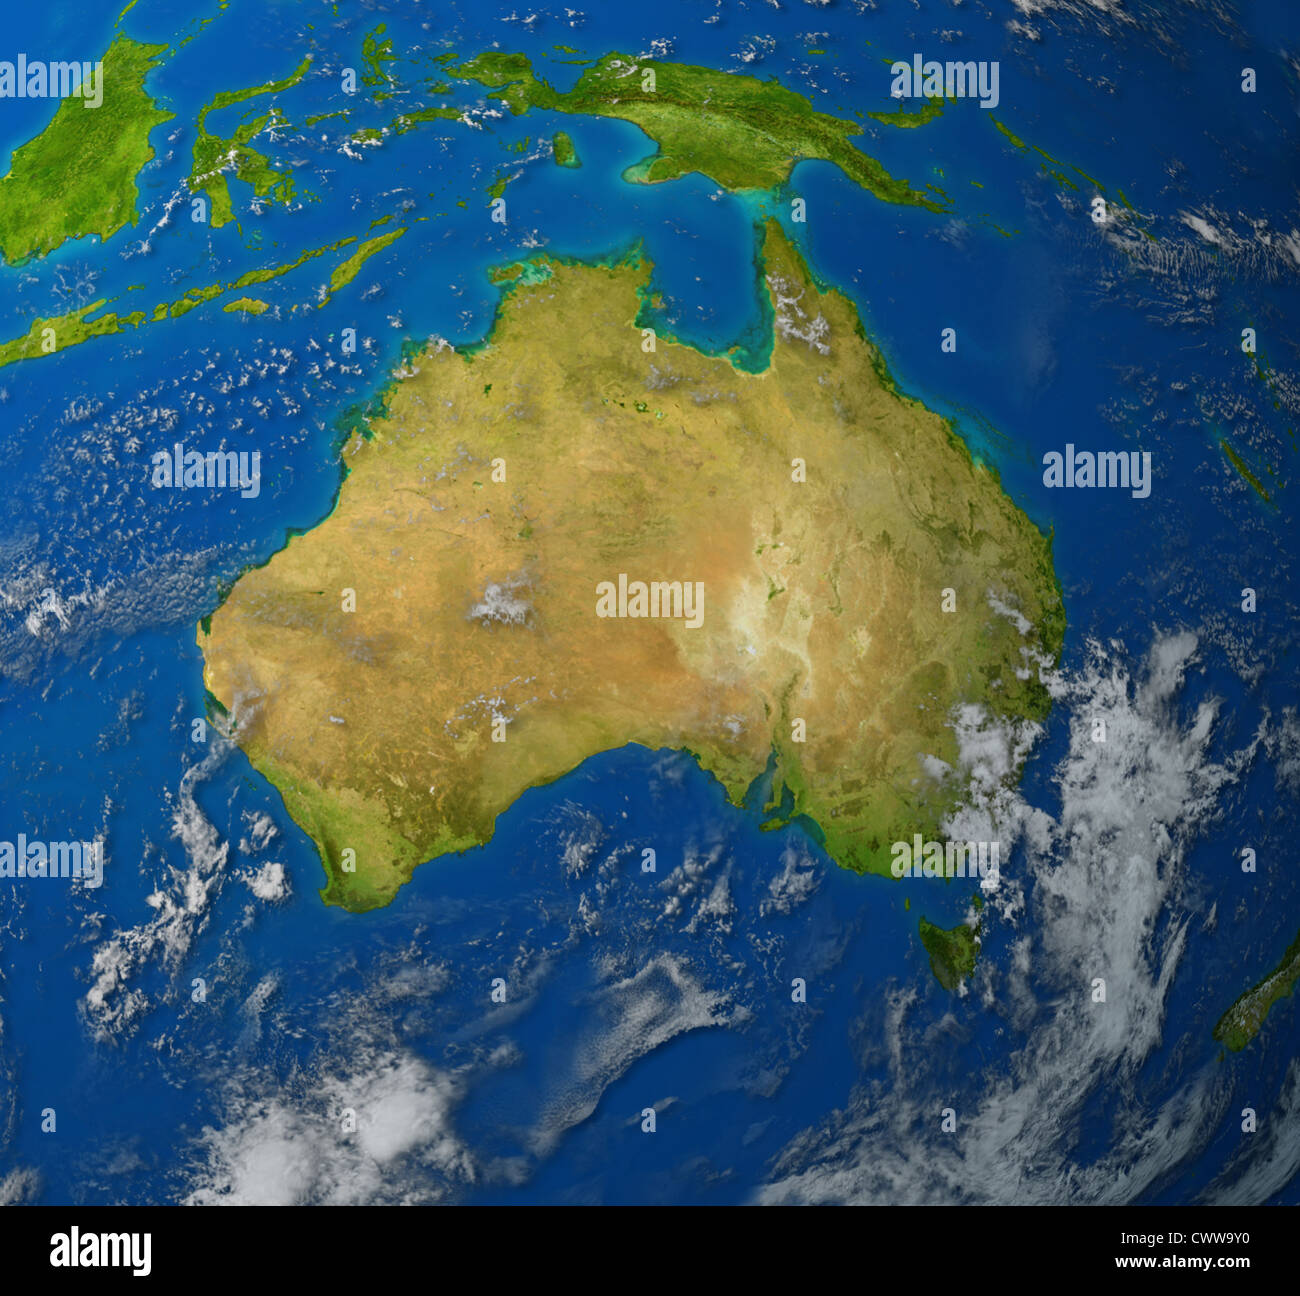 Australia mapa realista del continente de Oceanía en la región del Pacífico de Asia, que representan los Ozzies y la tierra de Aussie. Foto de stock